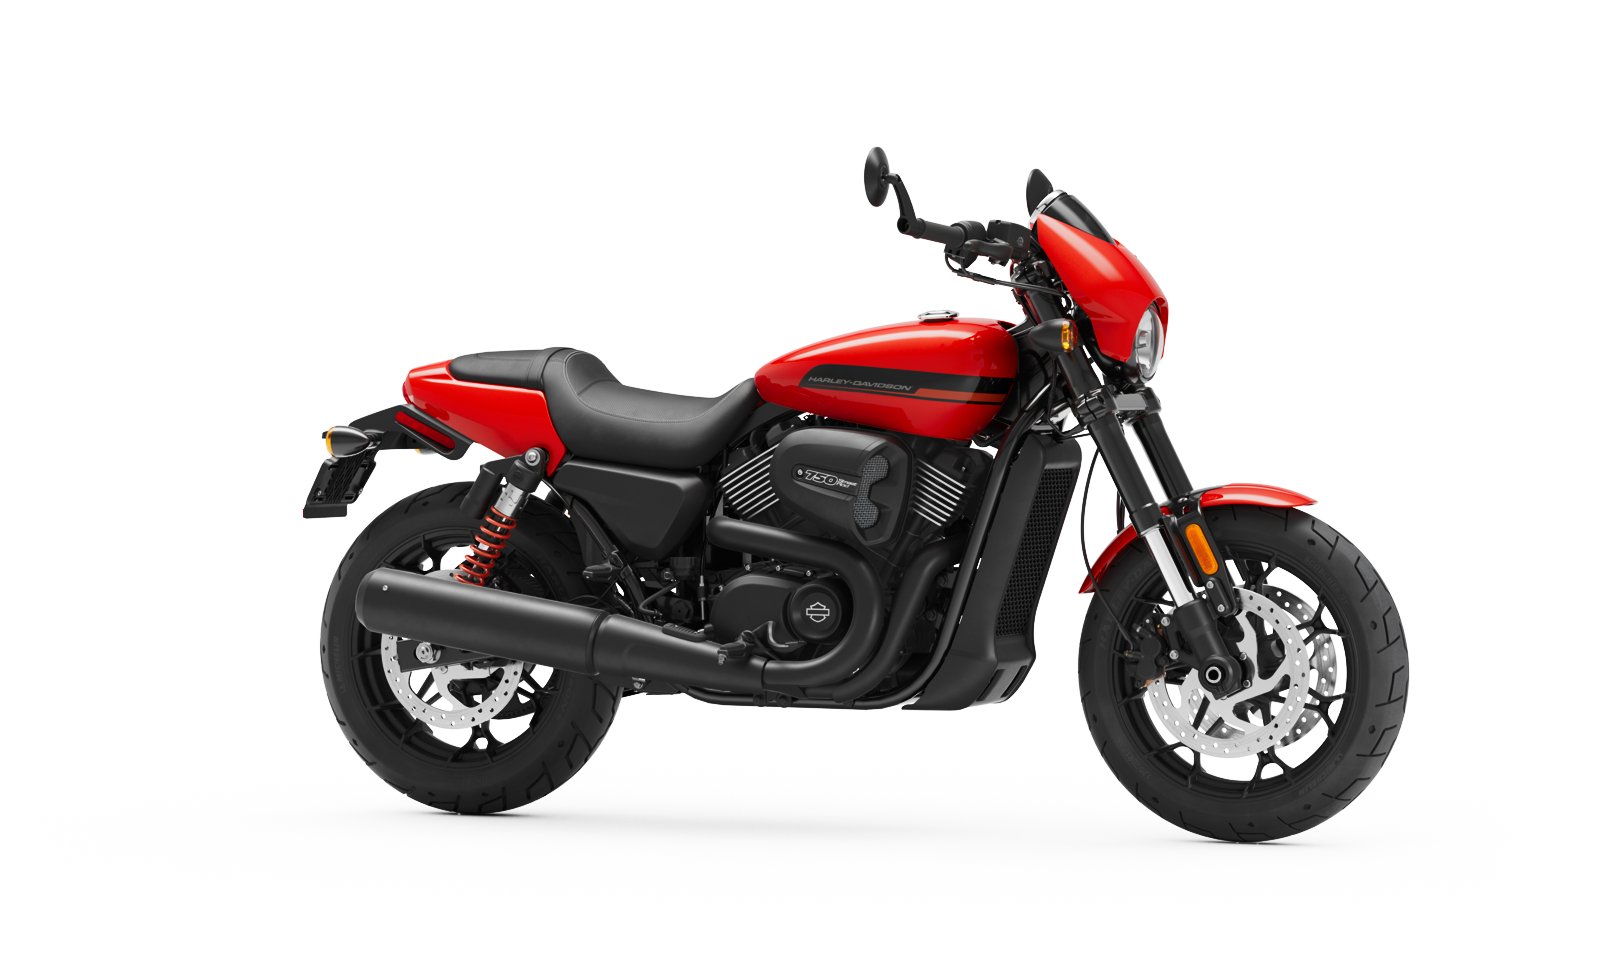 2020 Street Rod Motorcycle Harley Davidson Europe